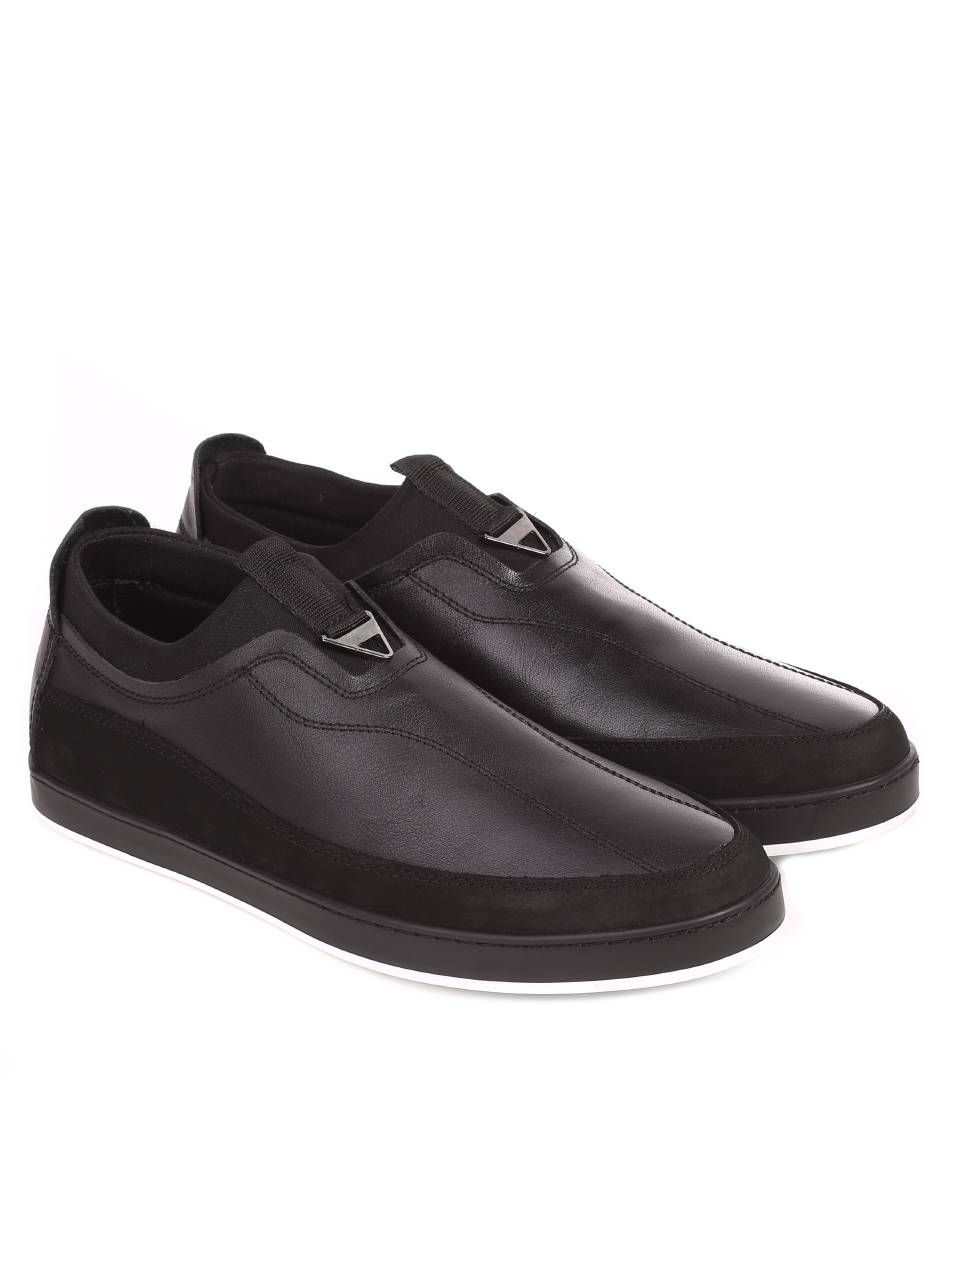 Ежедневни мъжки обувки от естествена кожа 7AT-21291 black